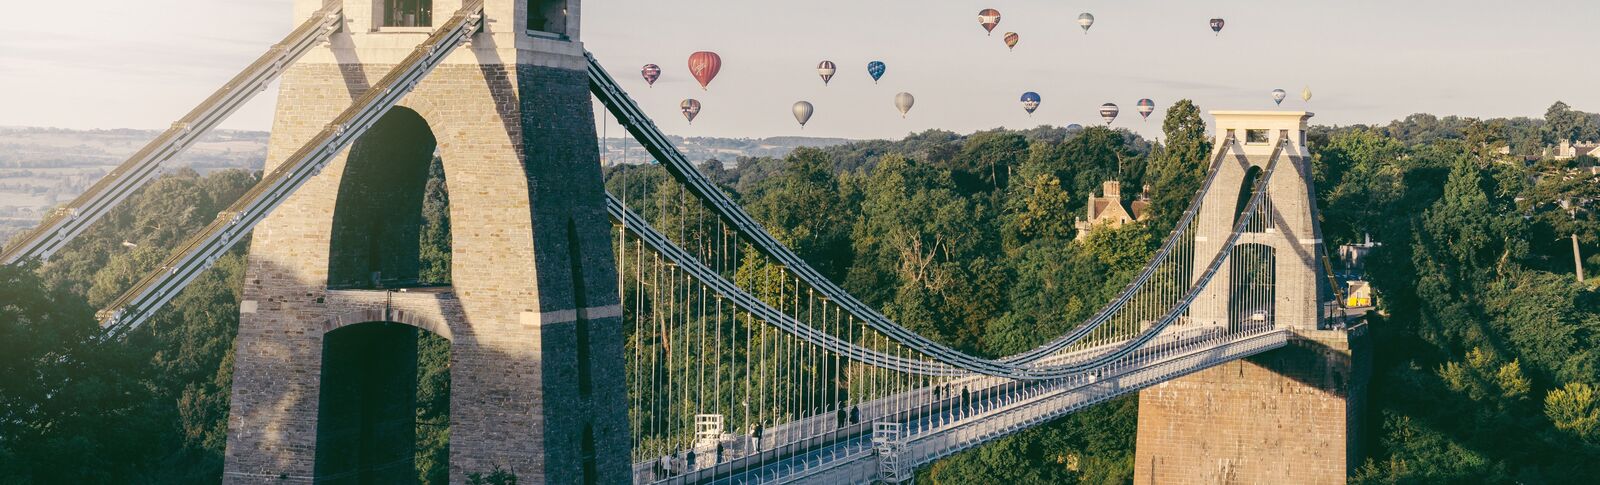 Hot air balloons over Clifton Suspension Bridge